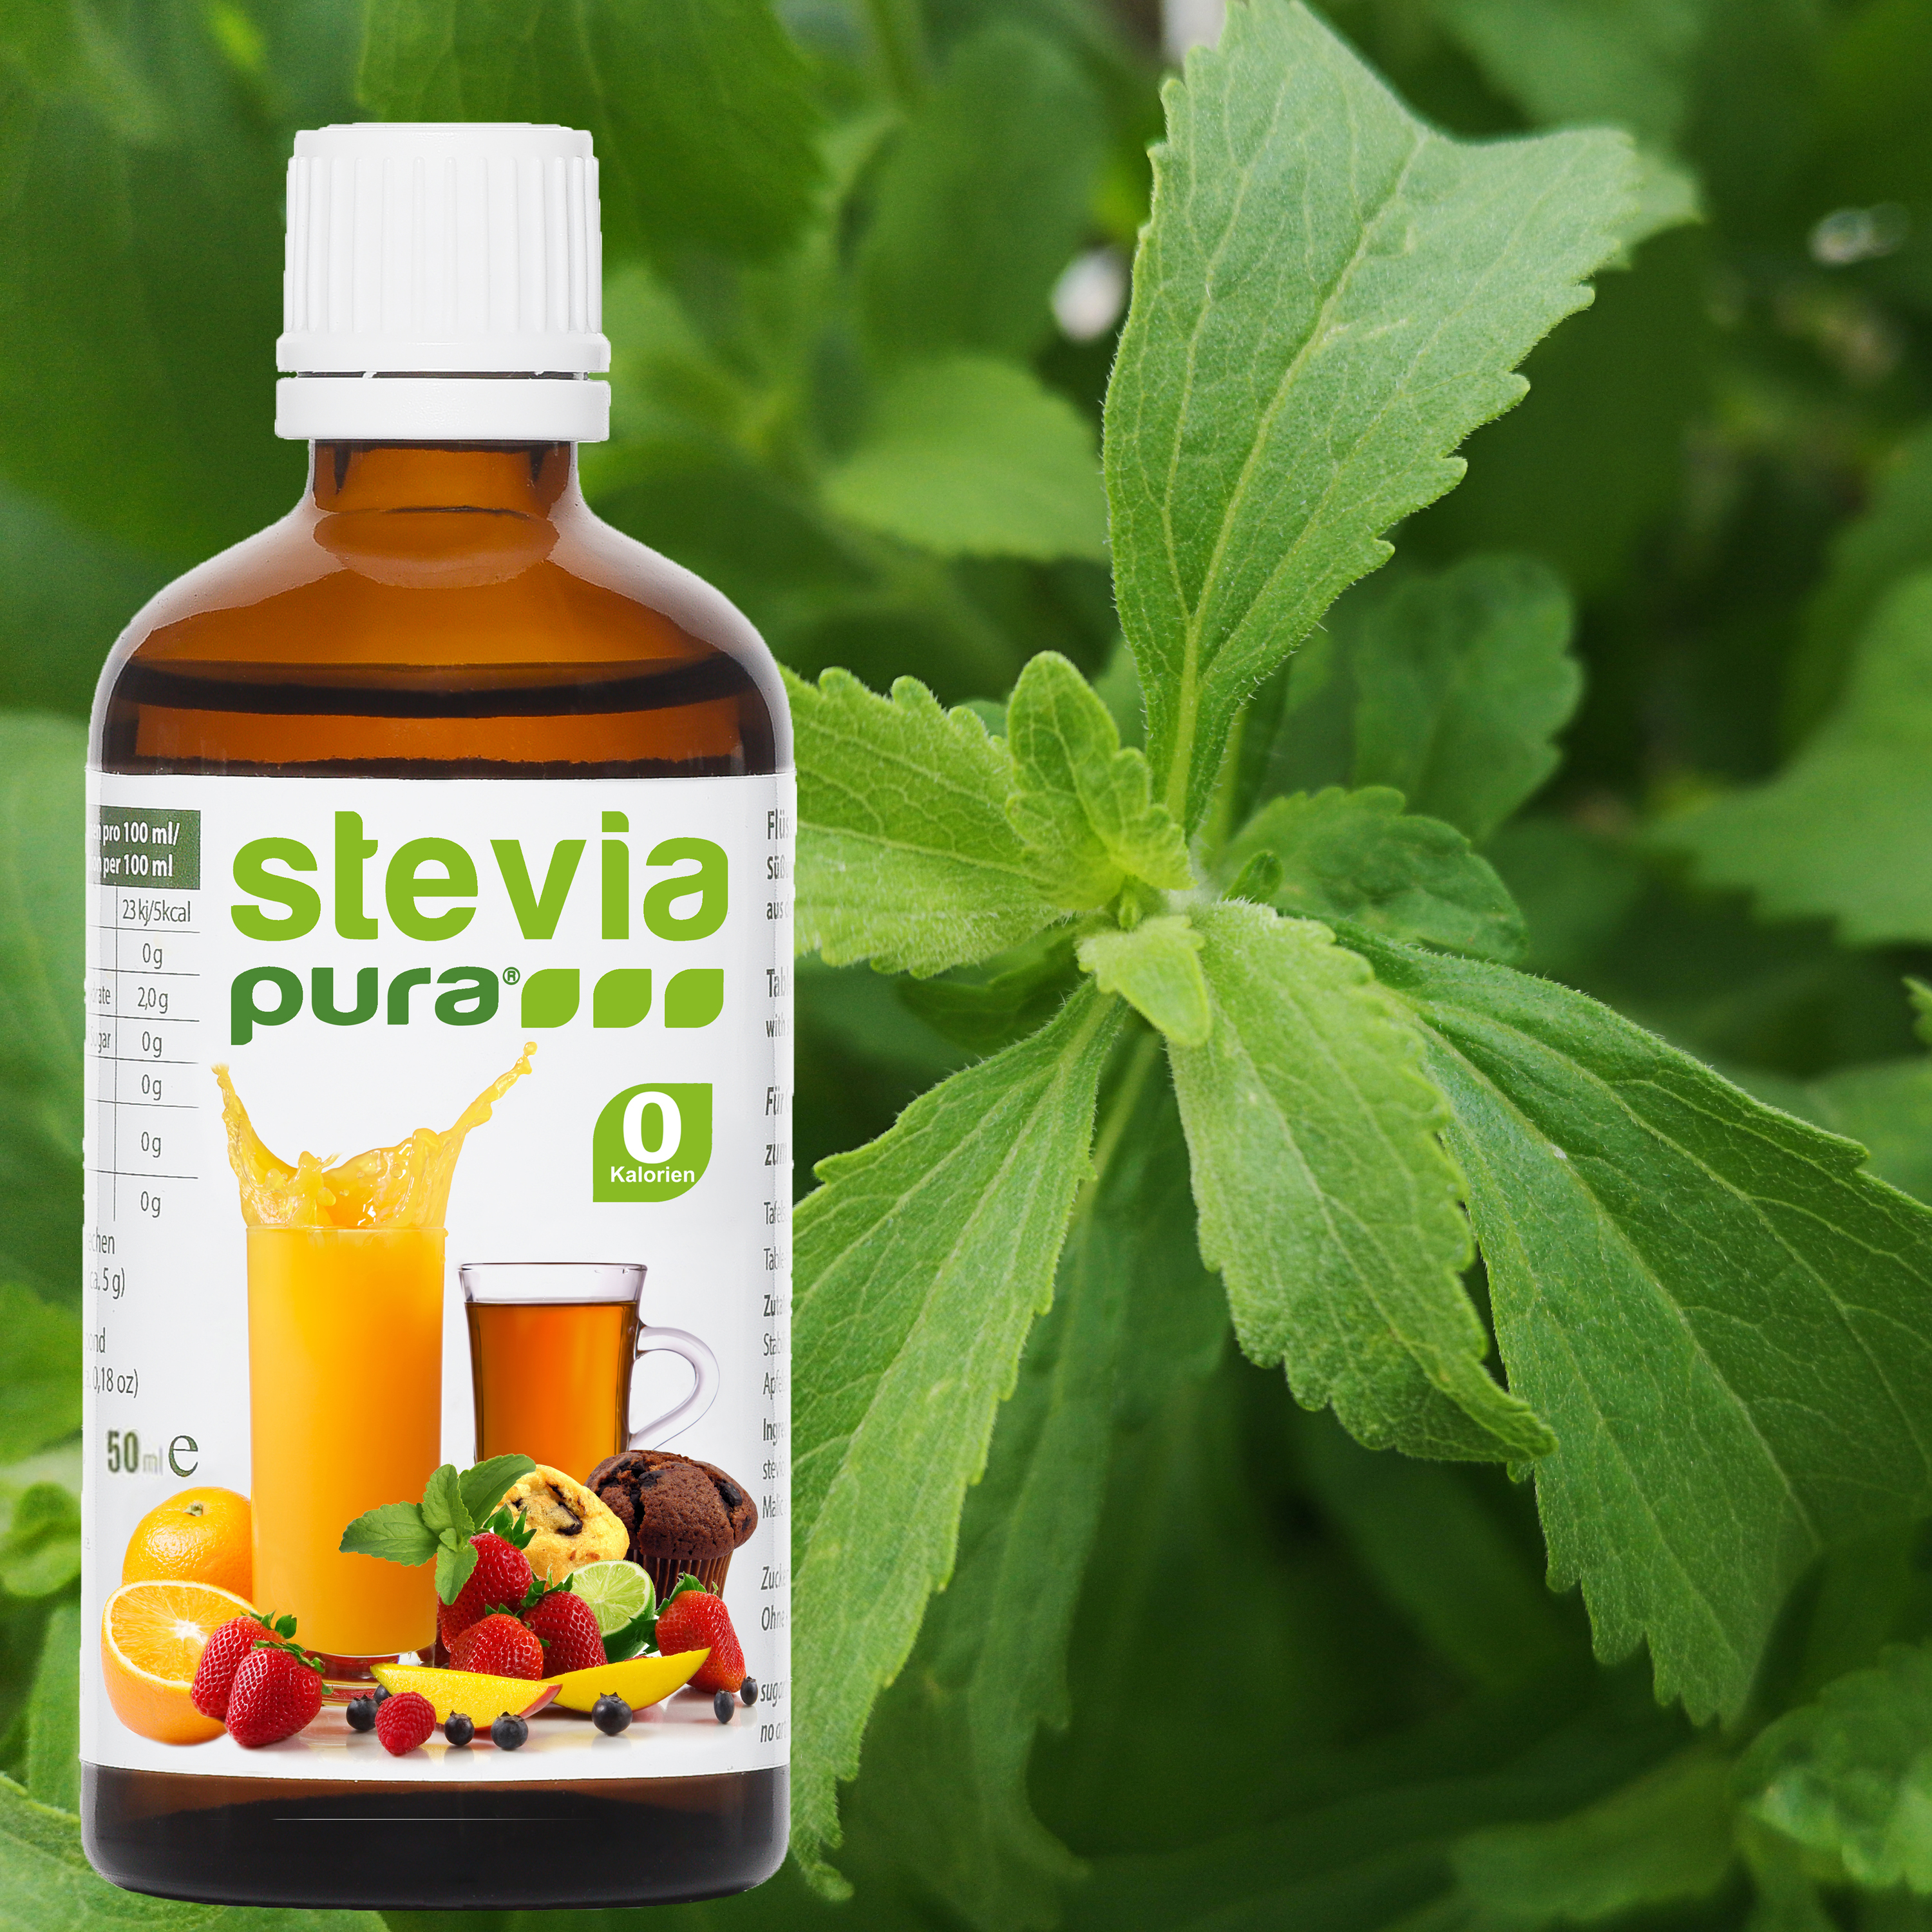 Informations sur l'édulcorant Liquide Stevia d'origine naturelle provenant de la plante Stevia.